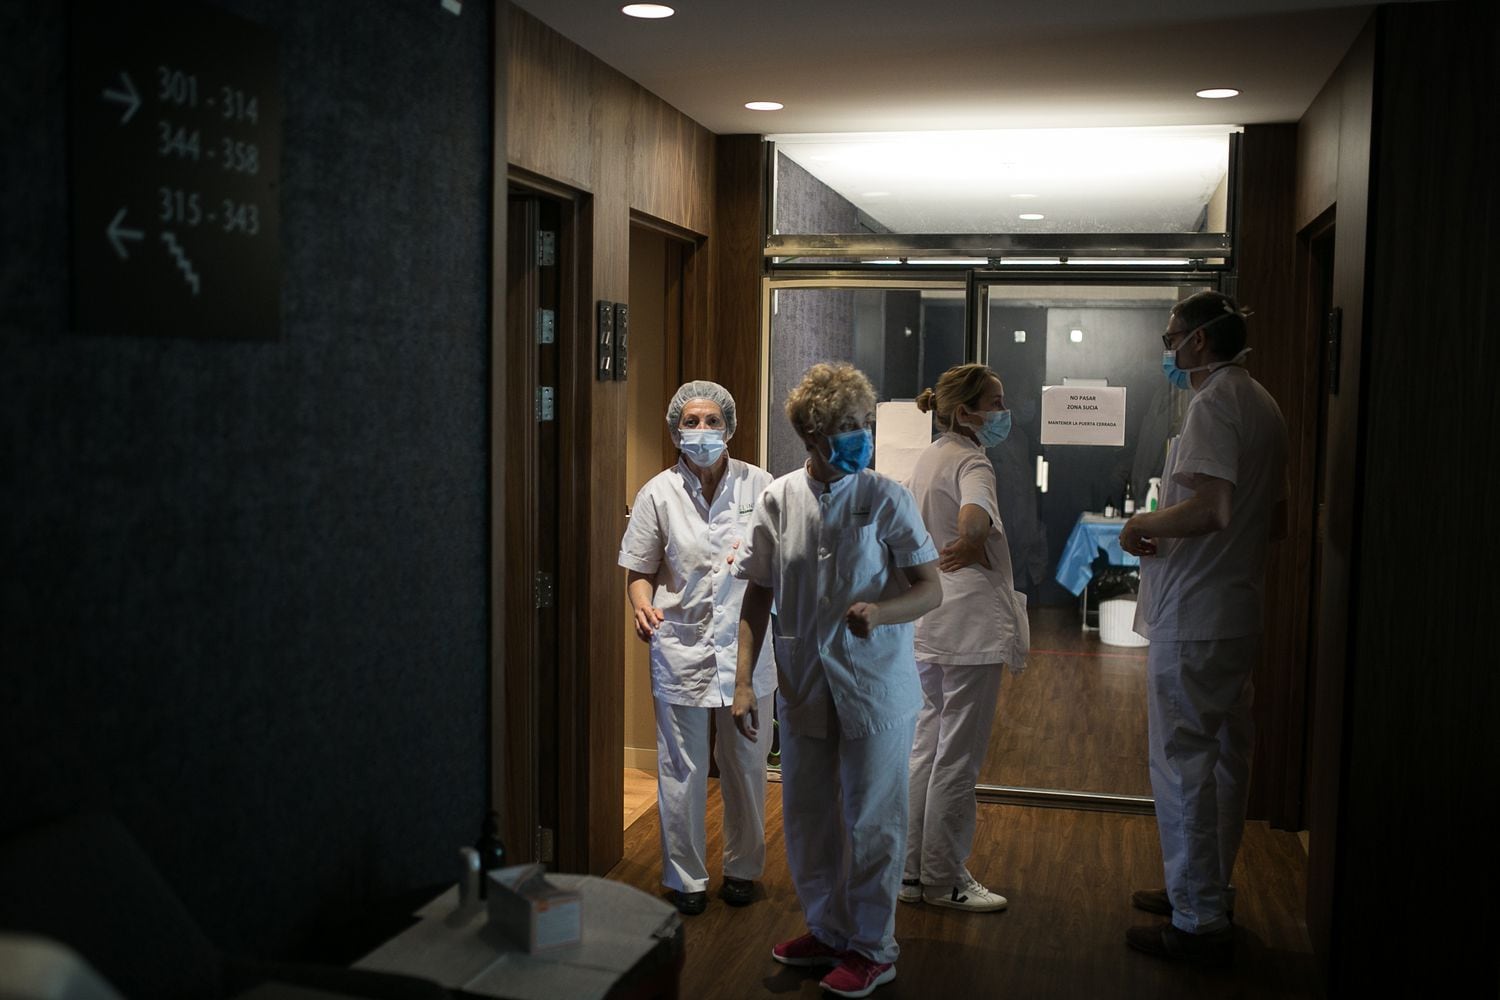 Unas sanitarias en el hotel medicalizado por el hospital Clínic
